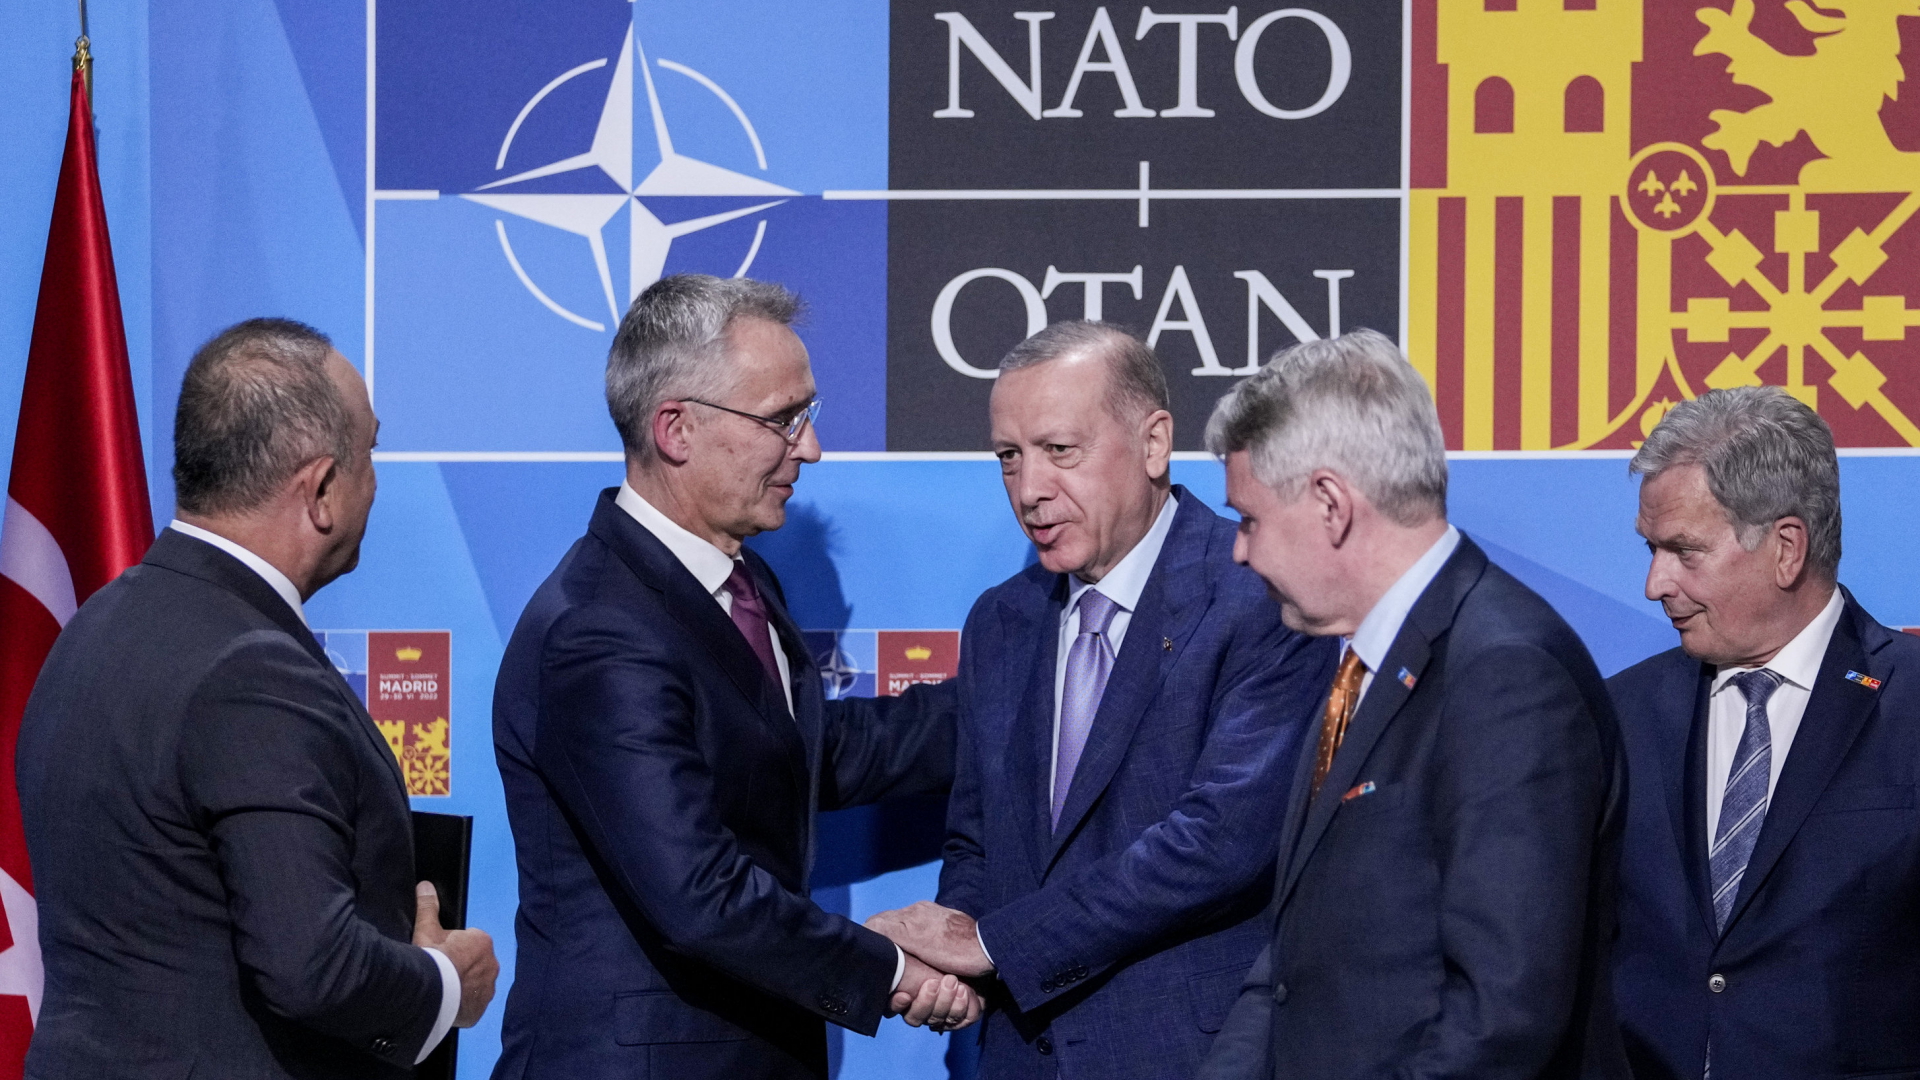 NATO-Generalsekretär Jens Stoltenberg schüttelt dem türkischen Präsident Recep Tayyip Erdogan die Hand, nachdem bei einem Treffen der Widerstand der Türkei gegen die NATO-Aufnahme Finnlands und Schwedens ausgeräumt werden konnte. | AP